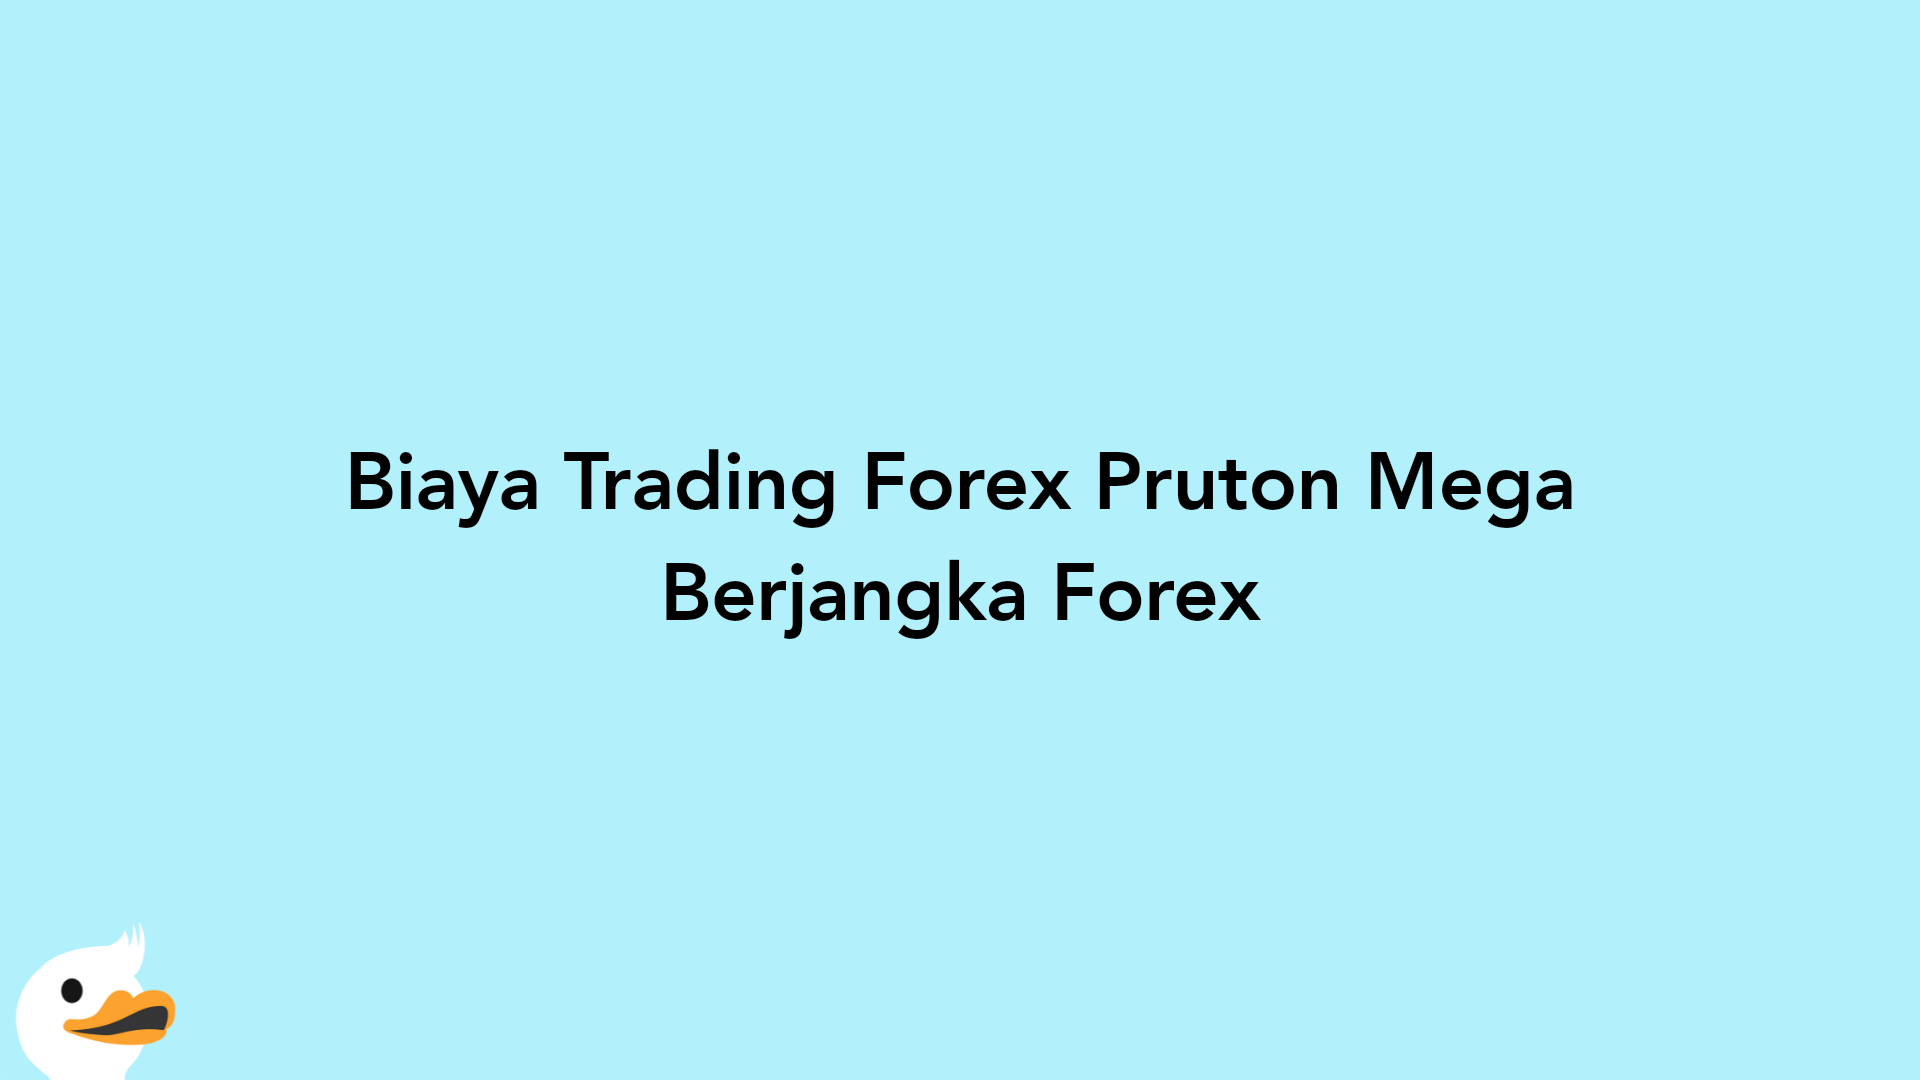 Biaya Trading Forex Pruton Mega Berjangka Forex